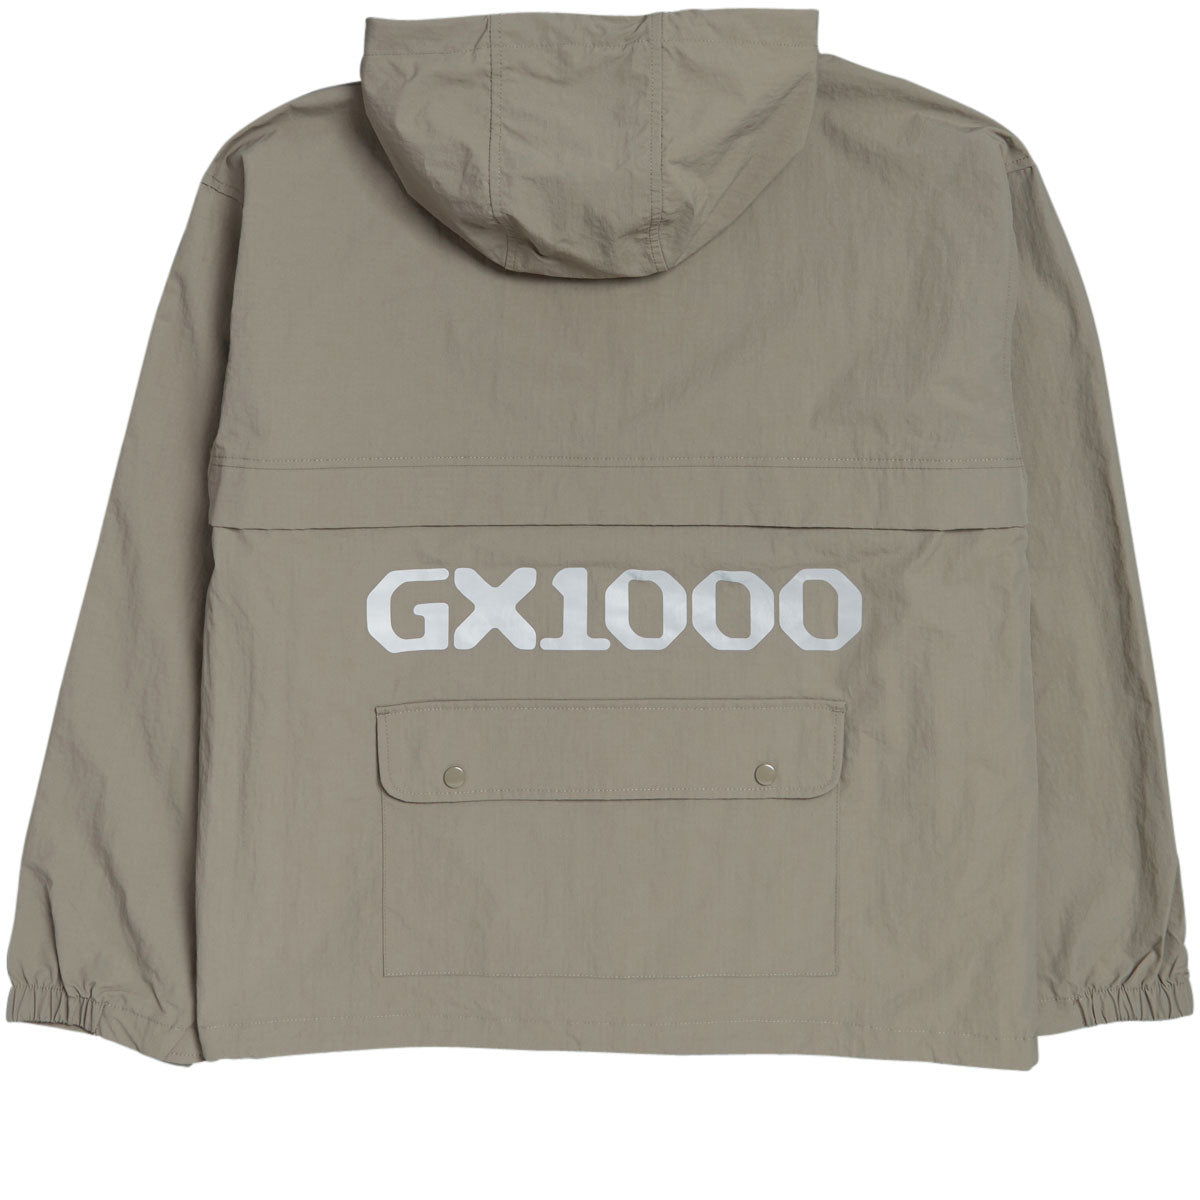 GX1000 Anorak Jacket - Tan image 2